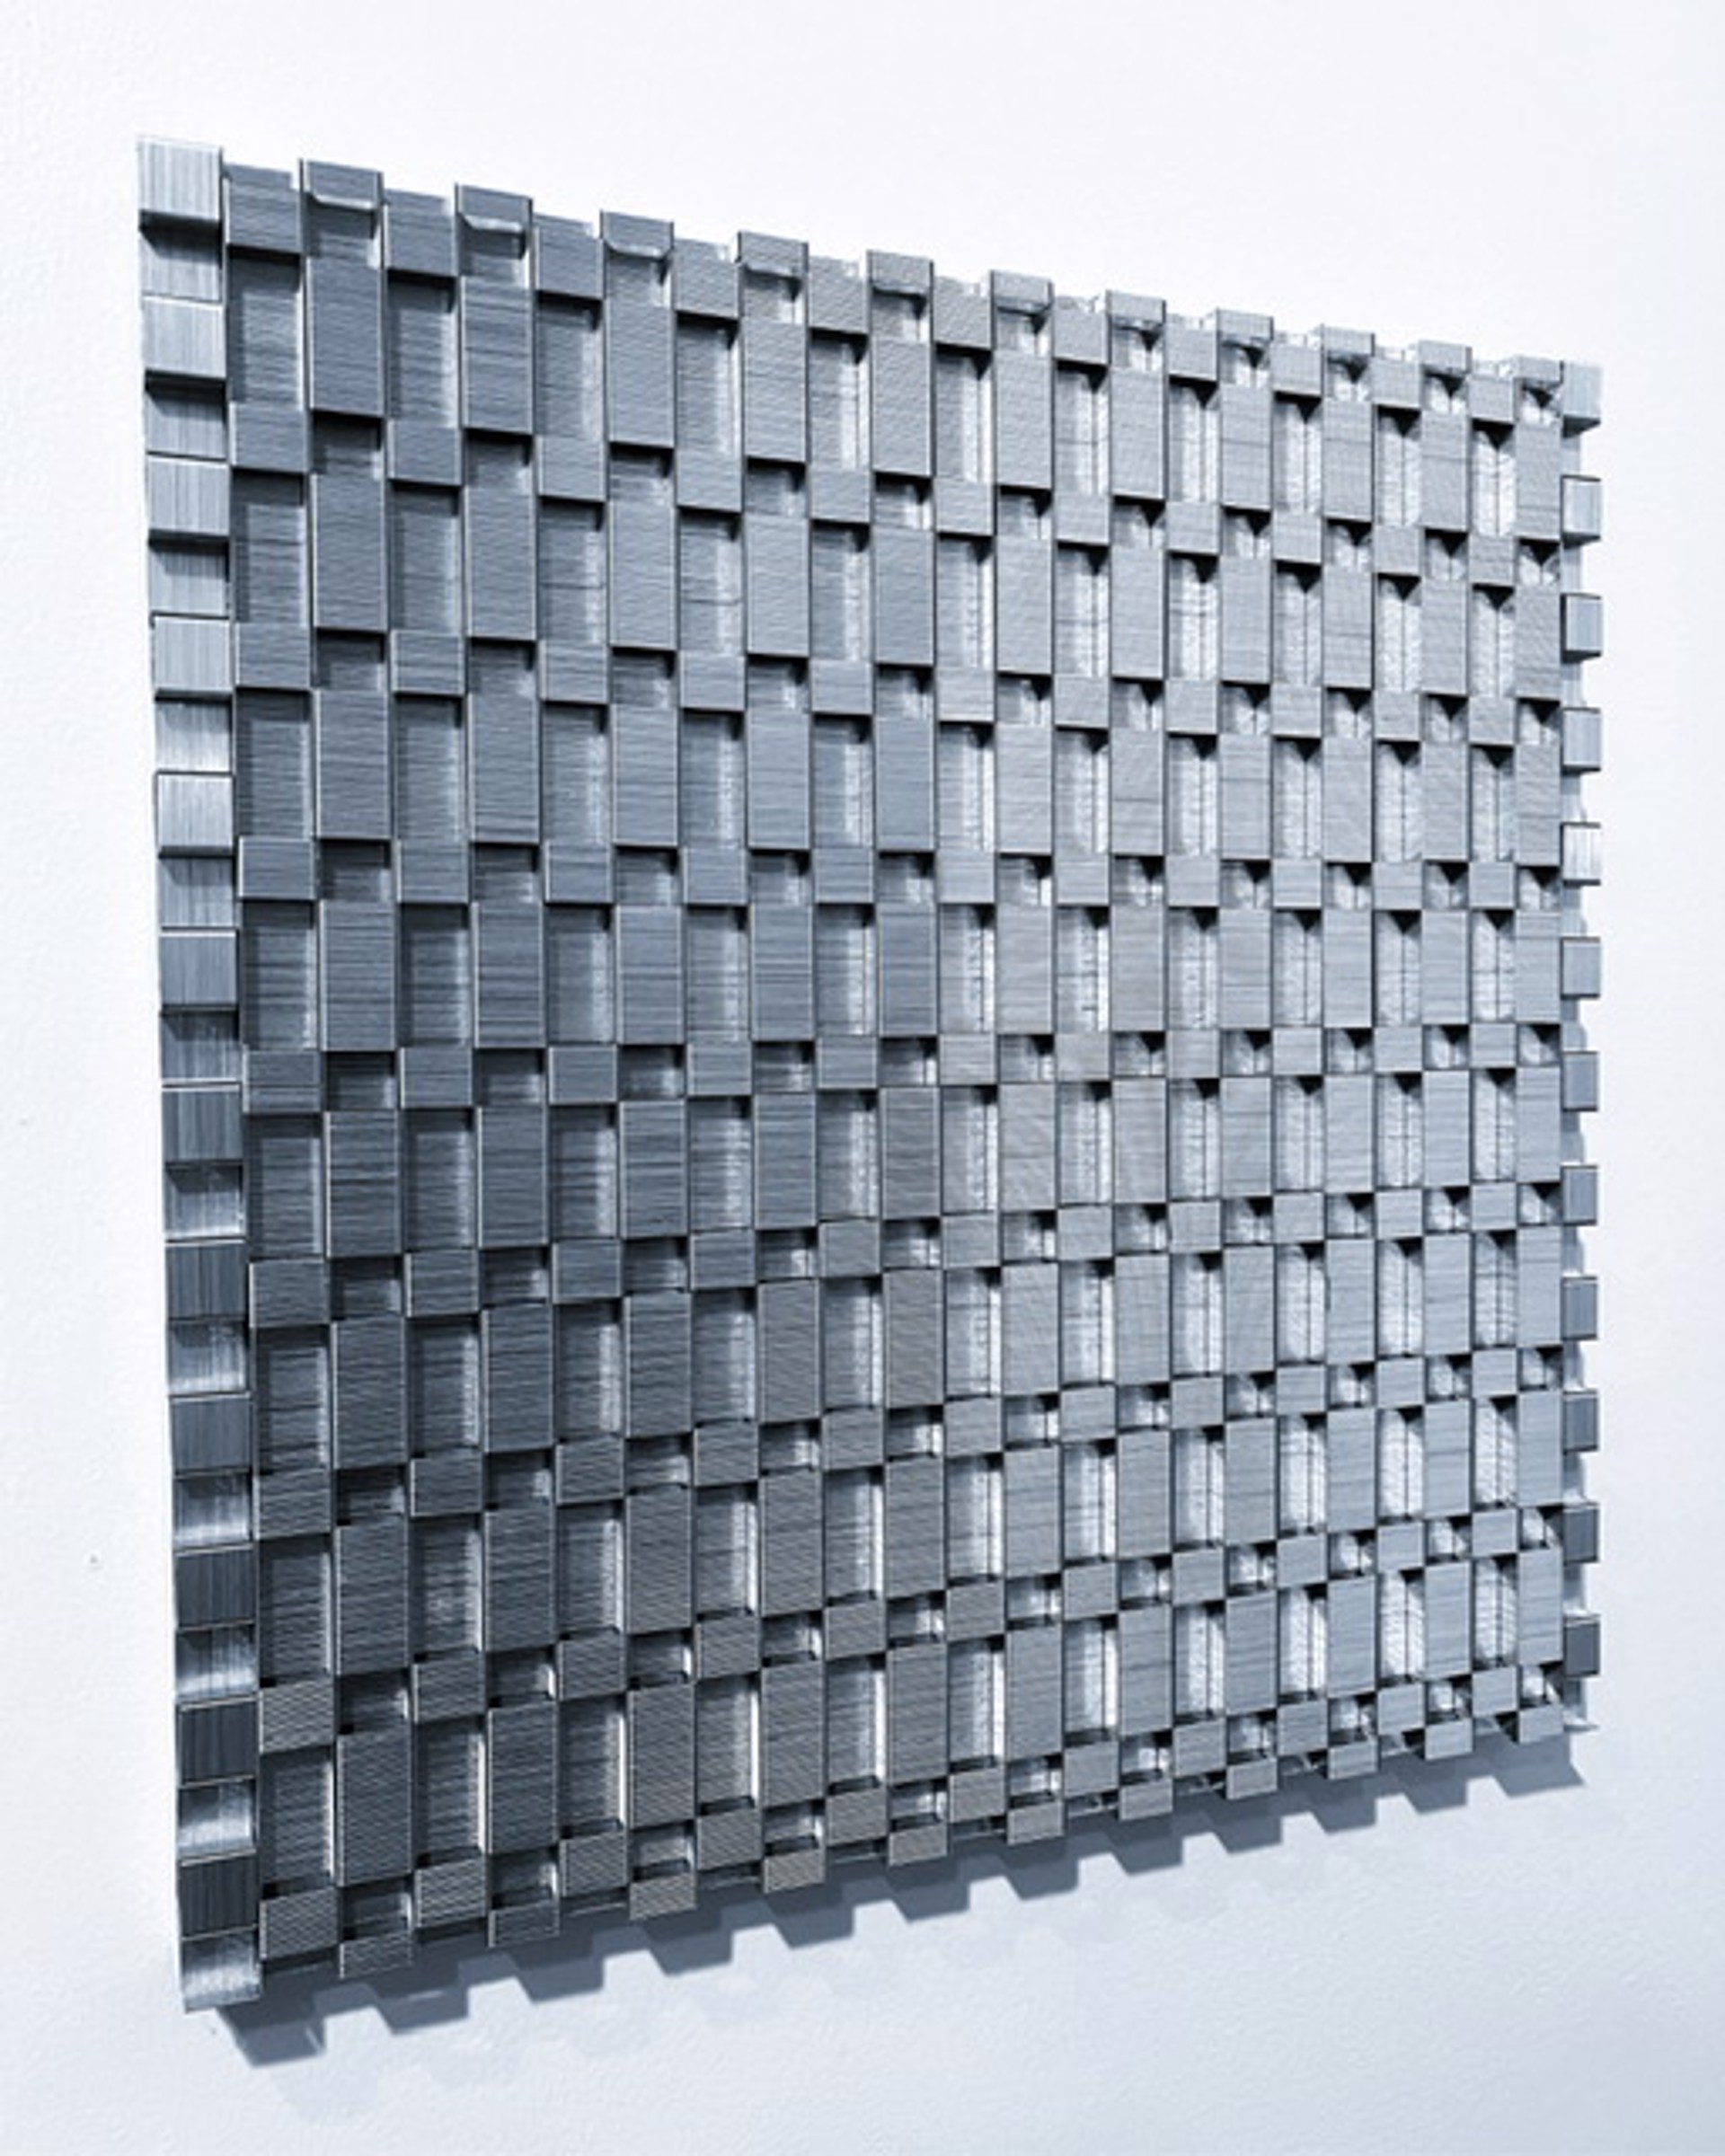 Checkerboard Variation 12x12 No. 5 by Evan Stoler